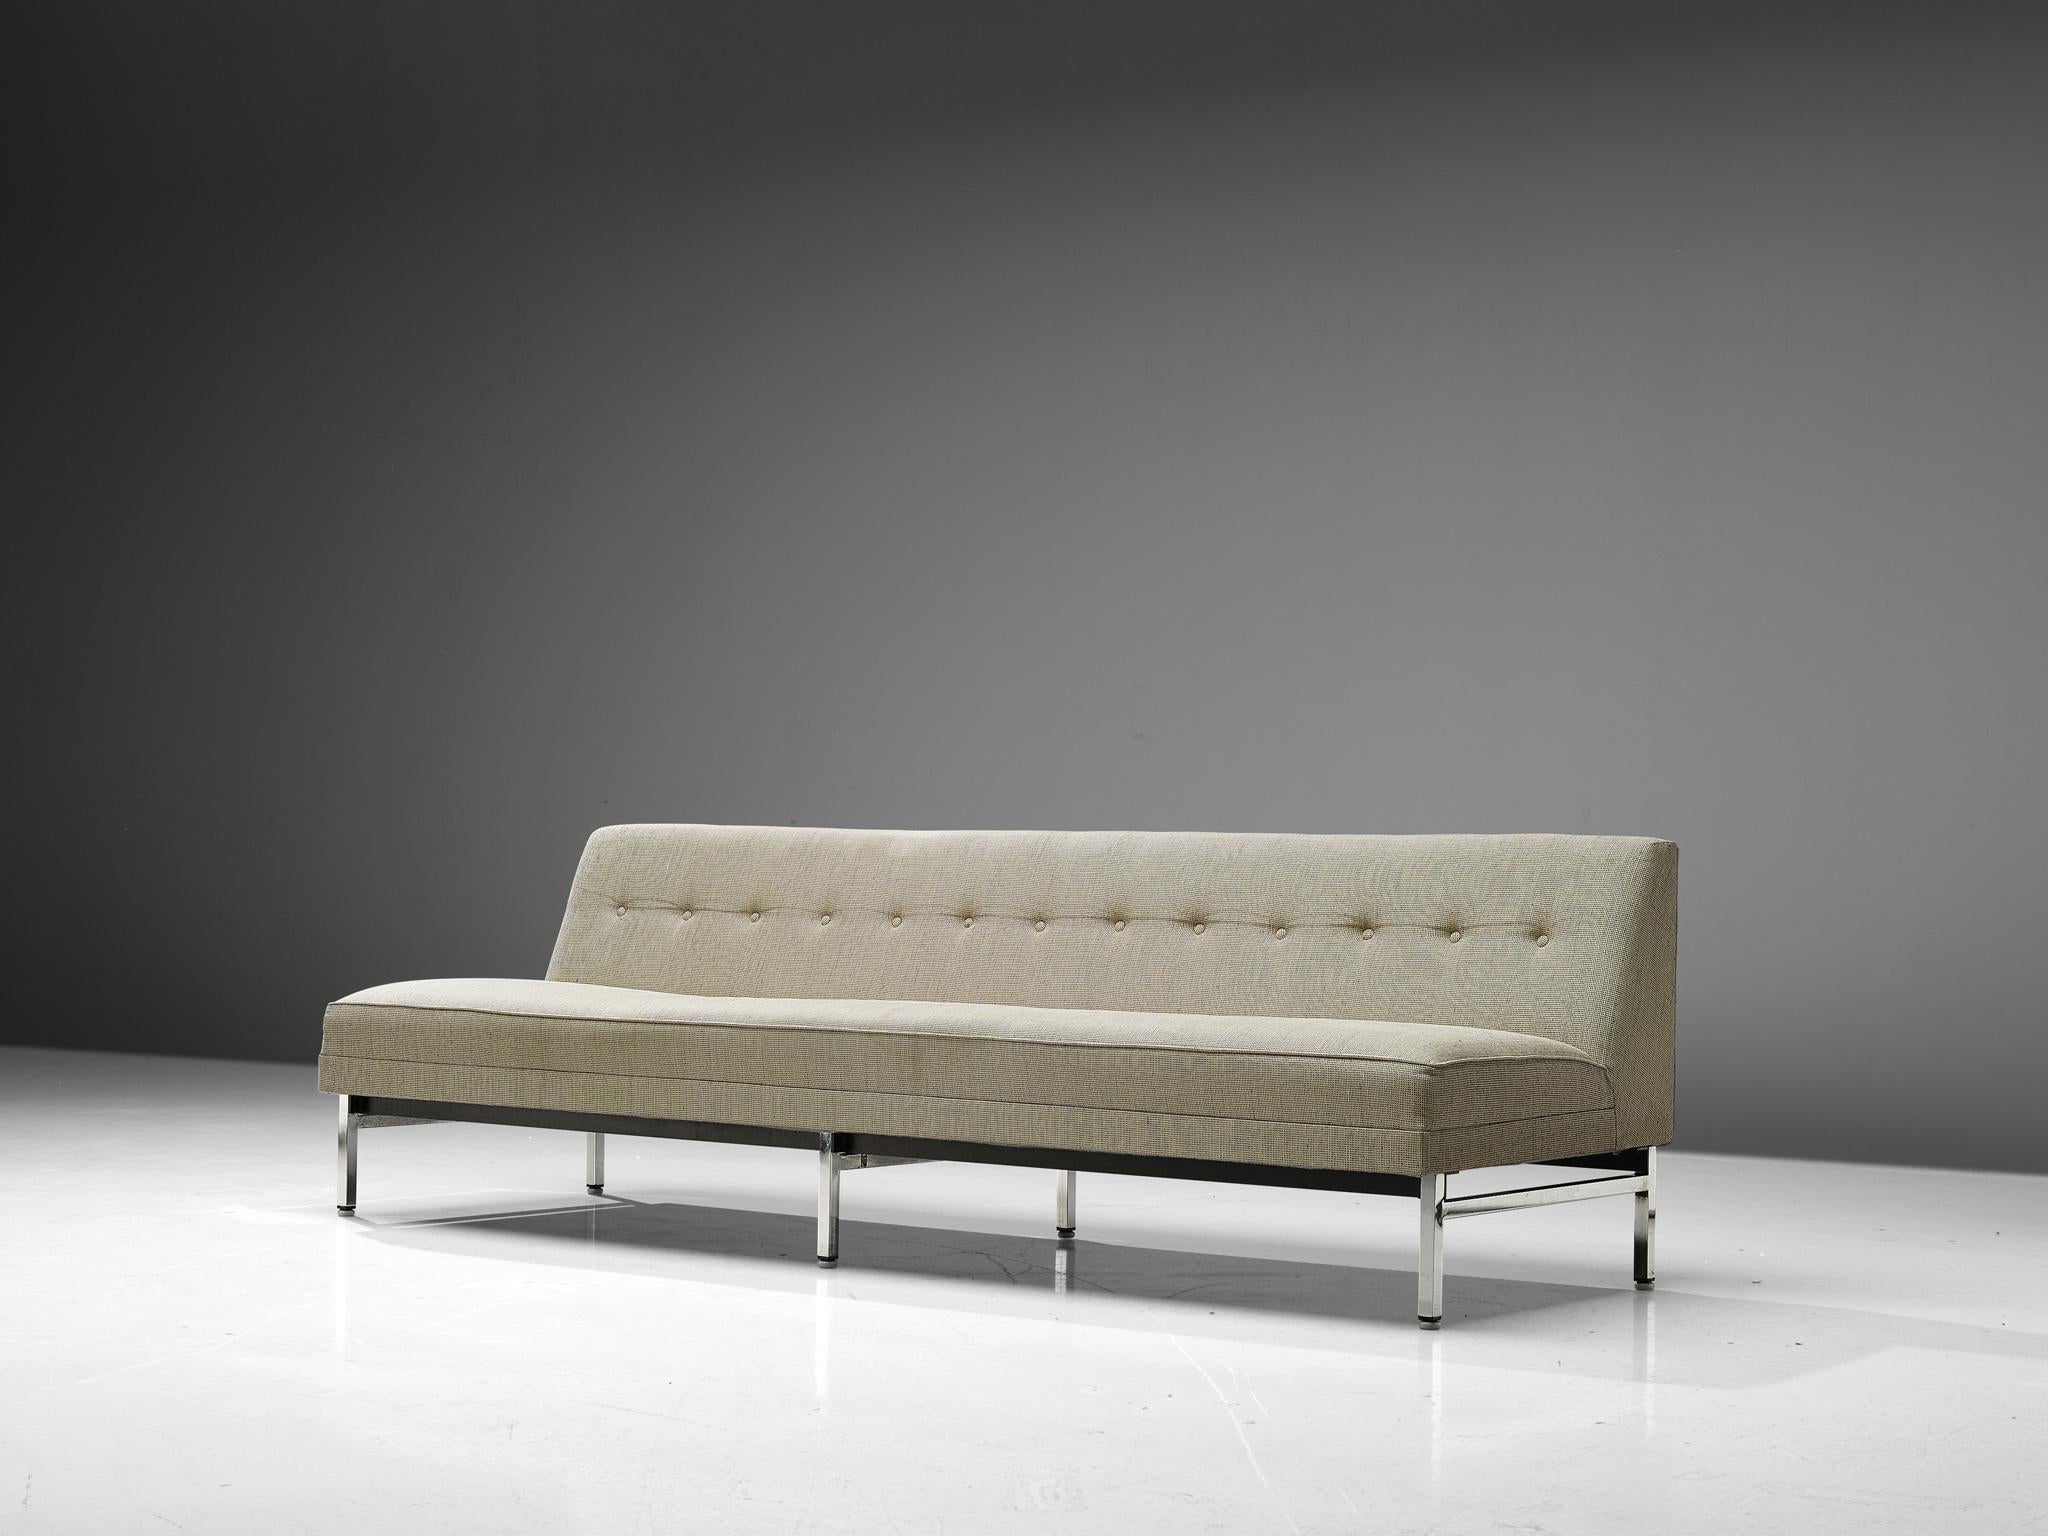 George Nelson für Herman Miller, Sofa, verchromtes Metall, Stoff, Vereinigte Staaten, 1960er Jahre

Dieses schöne Sofa wurde von dem bekannten amerikanischen Möbeldesigner George Nelson entworfen. Dieses schlanke Design zeichnet sich durch eine